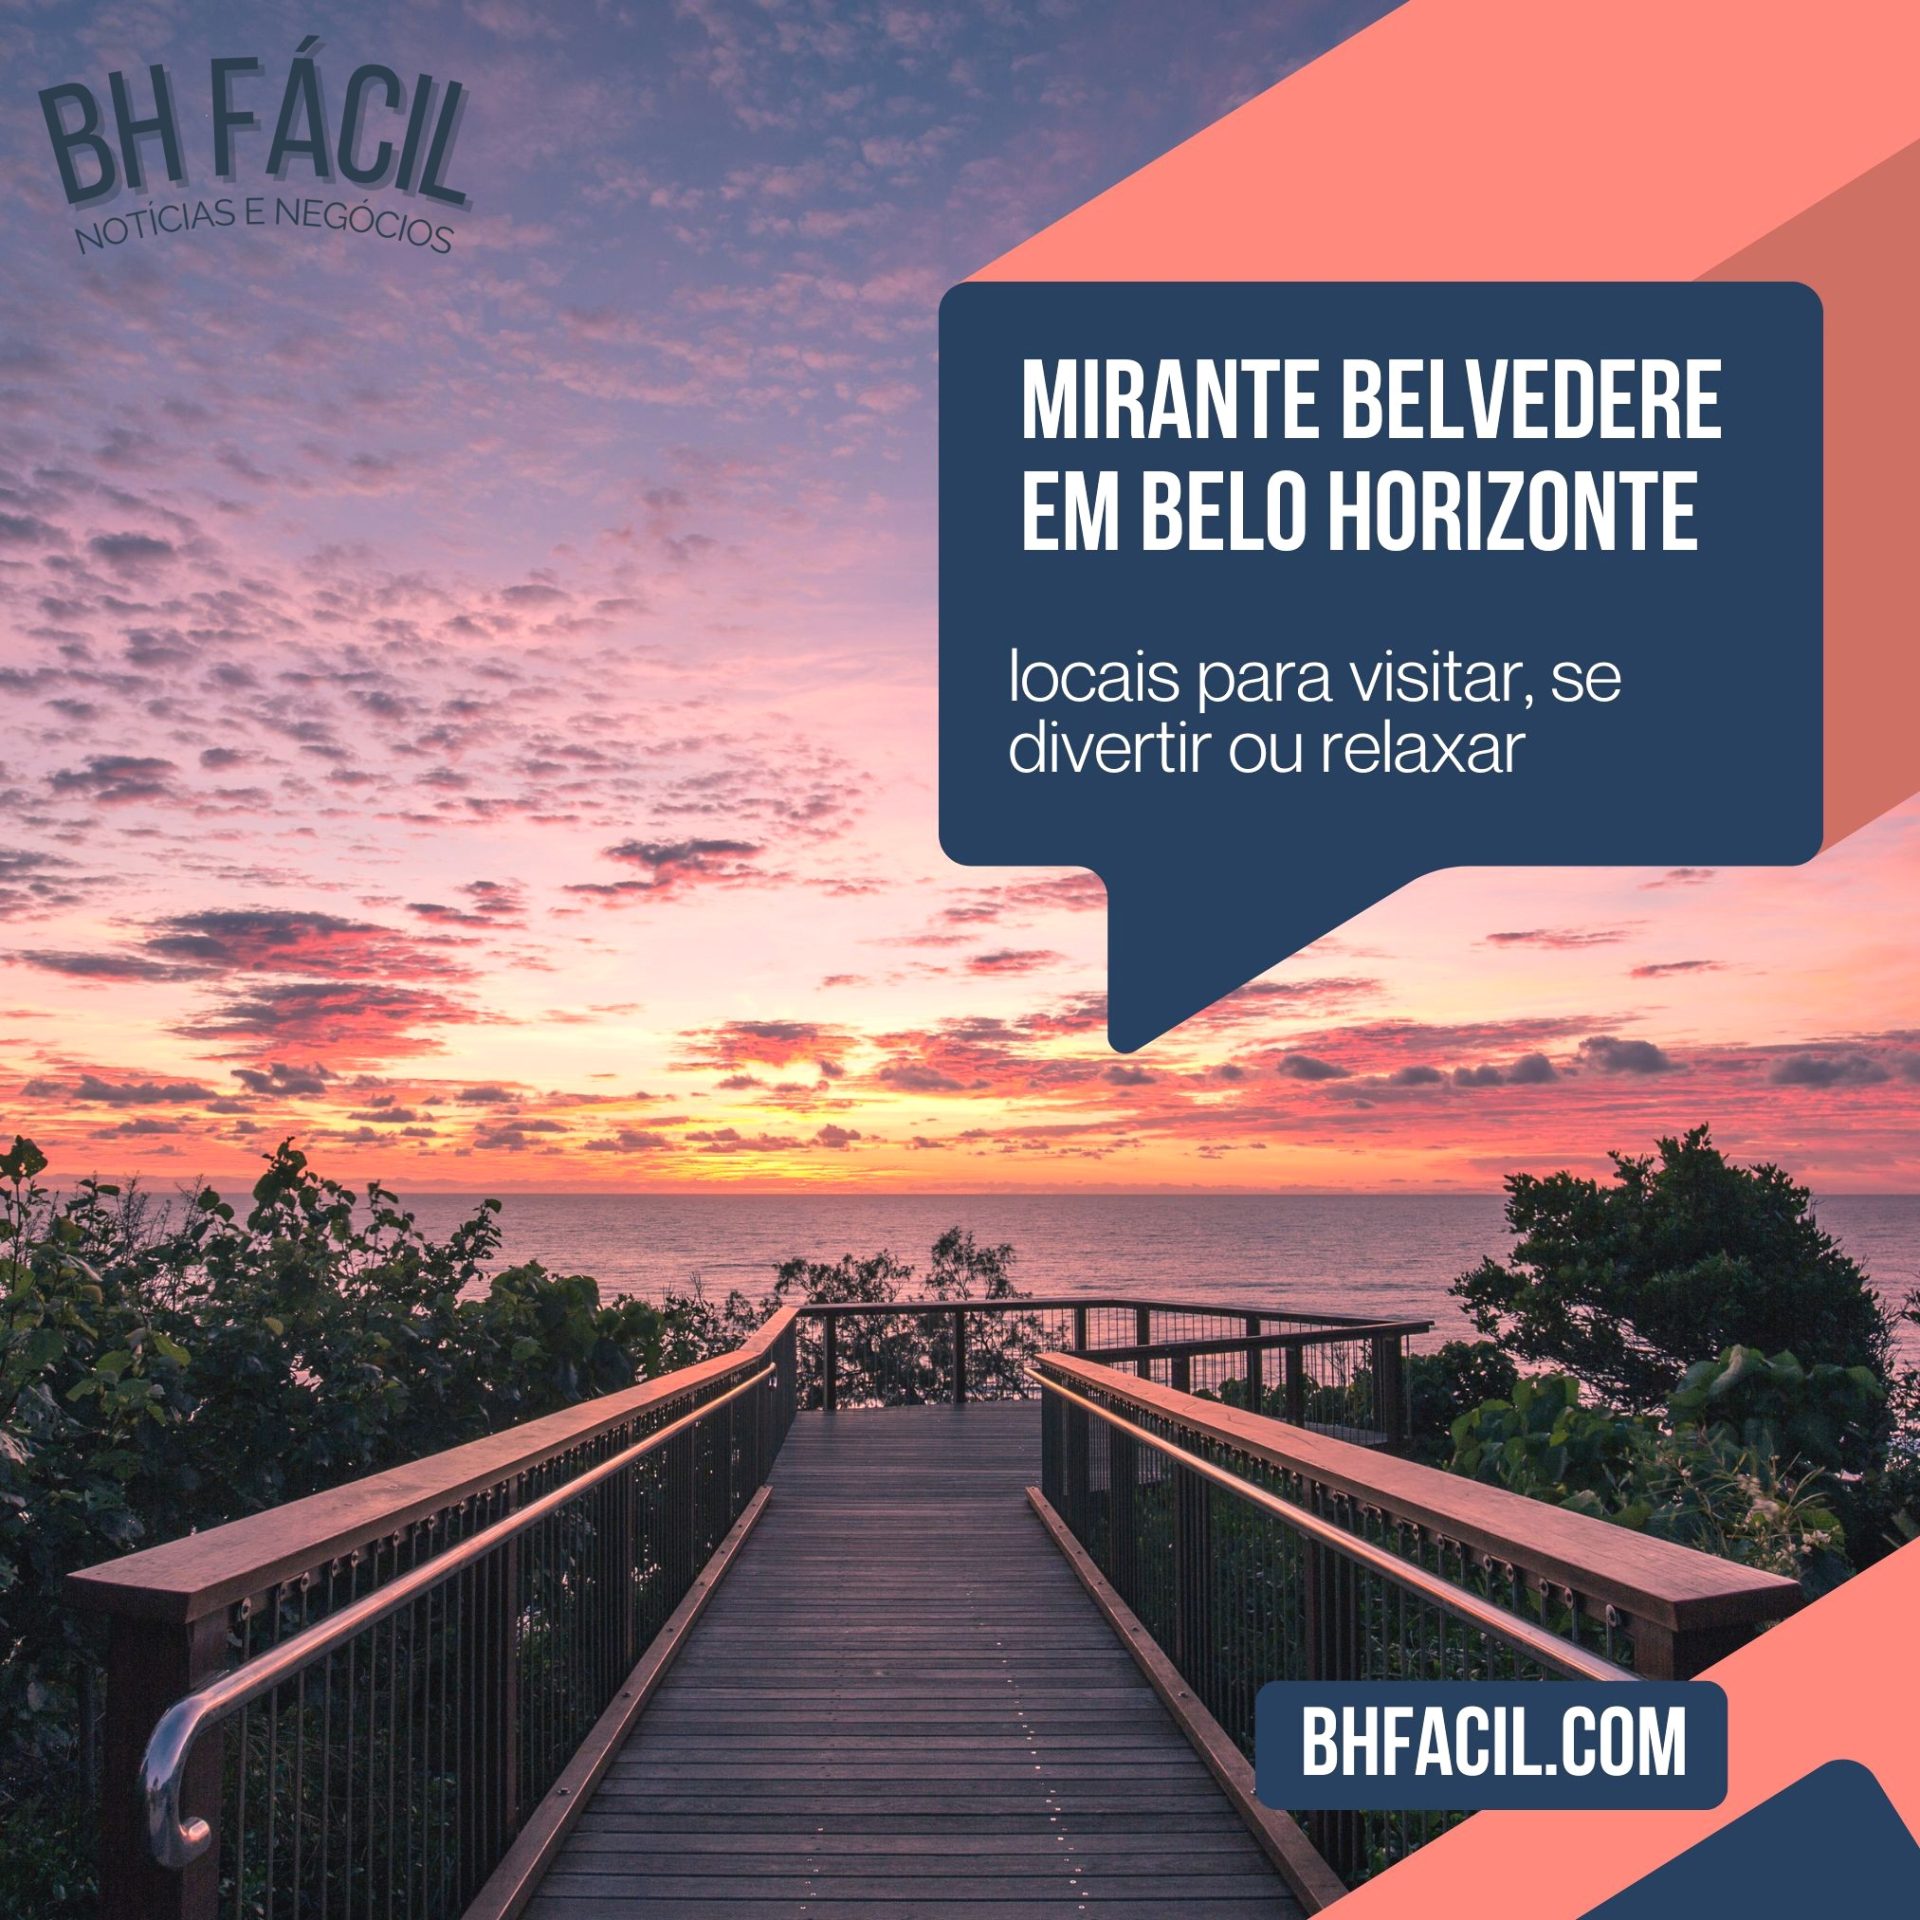 Mirante Belvedere: O que fazer neste ponto turístico de Belo Horizonte?